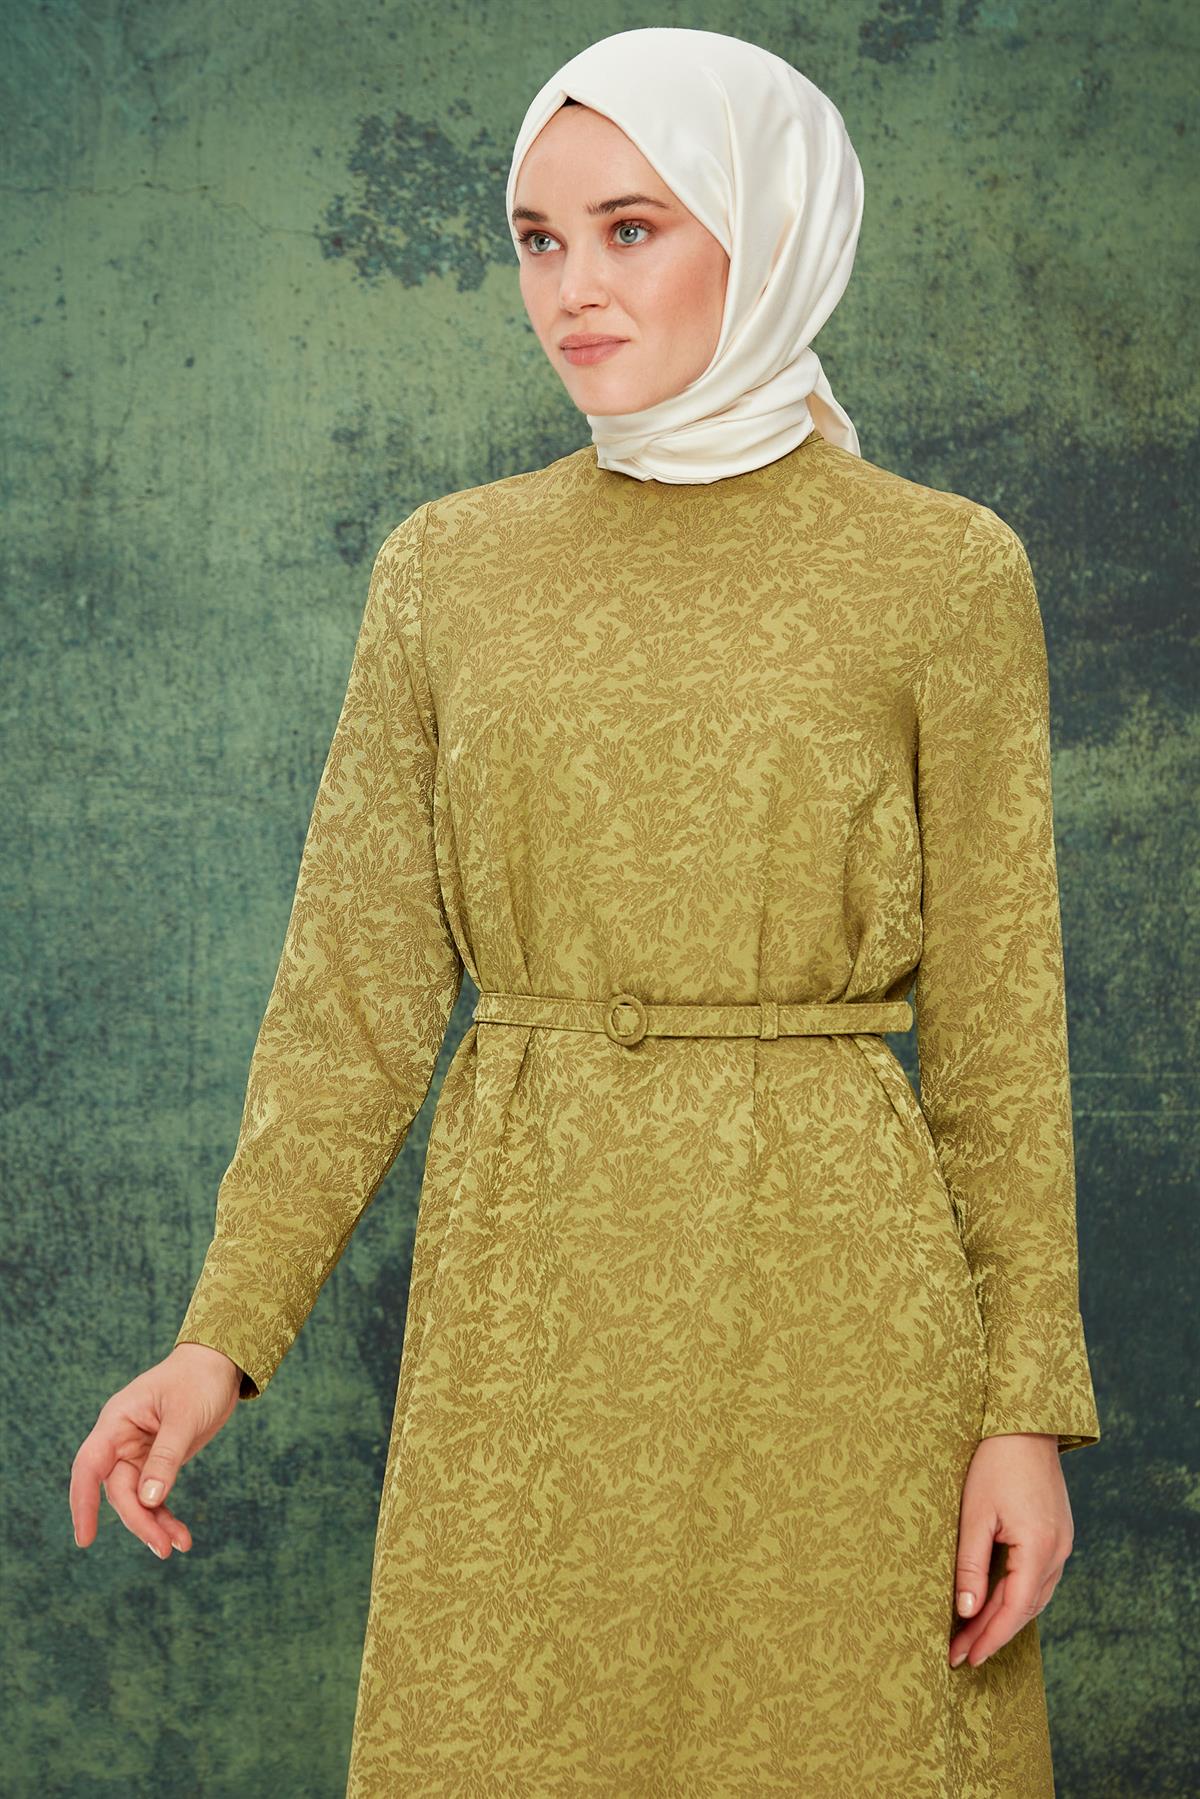 Tuğba Kadın Büyük Beden Elbise Modelleri | Tuğba Online